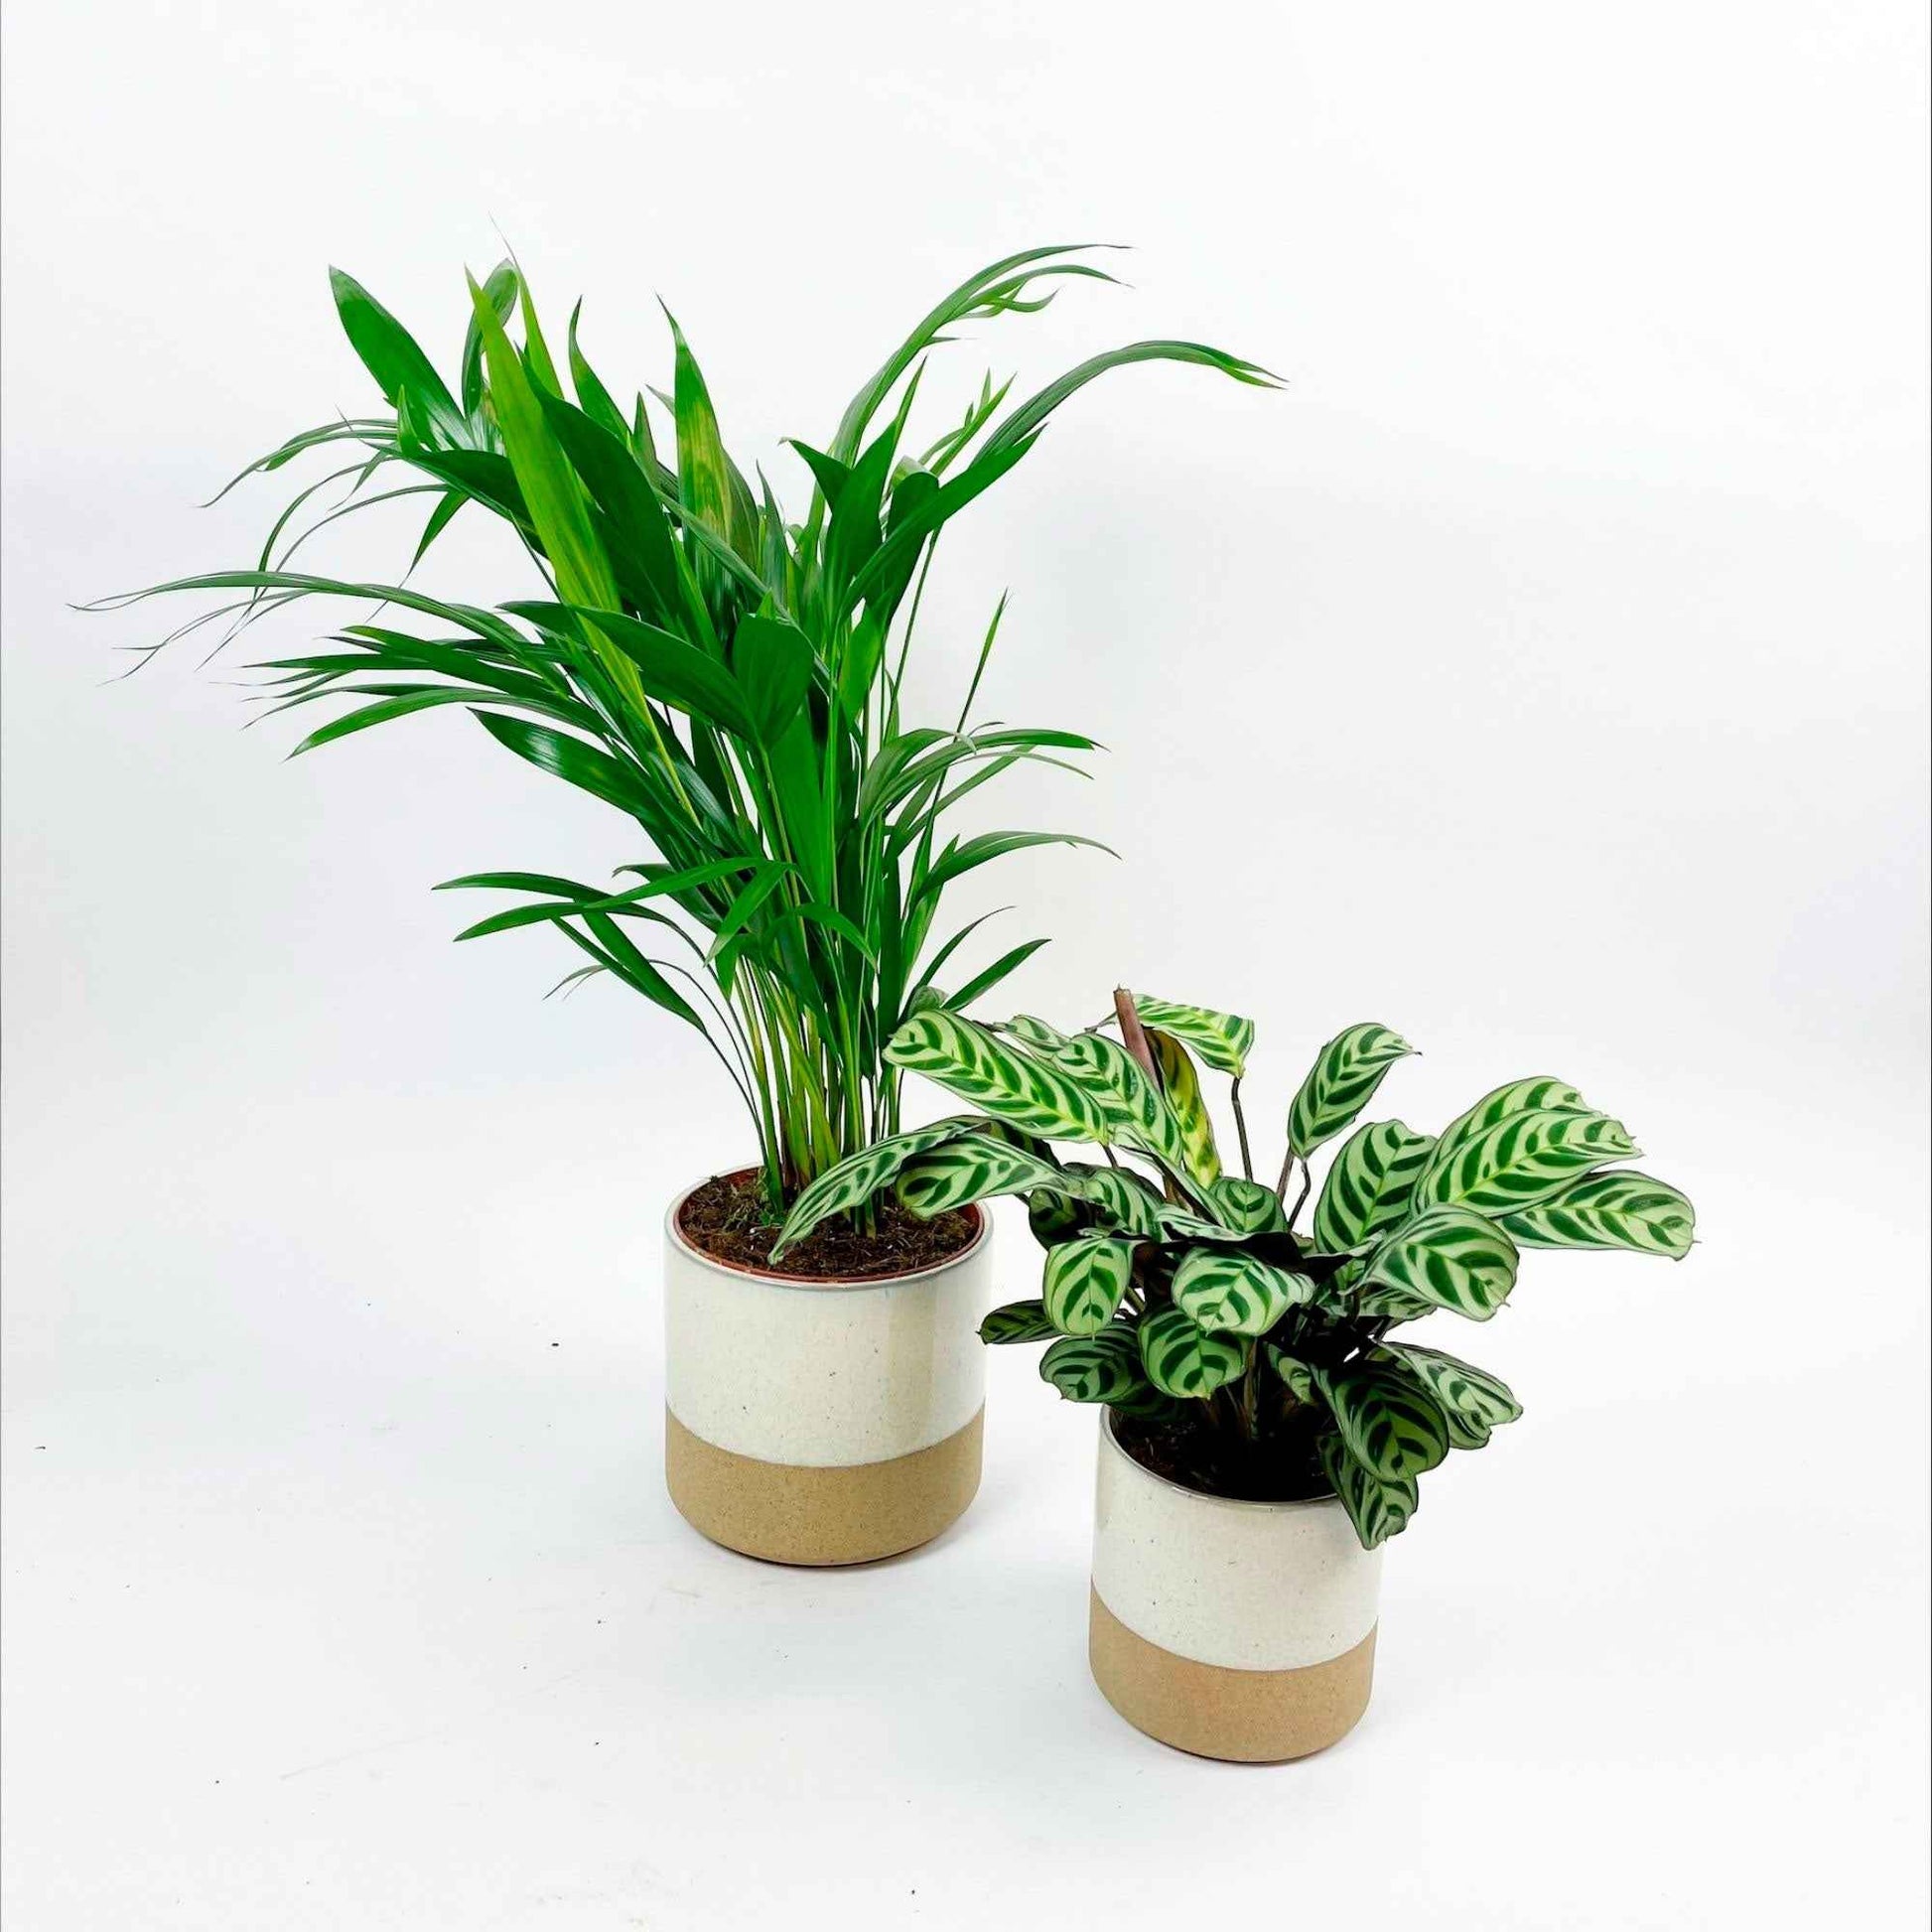 1x Arecapalme 'Dypsis lutescens' + 1x Gebetspflanze, inkl. Ziertöpfe, weiß - Grüne Zimmerpflanzen